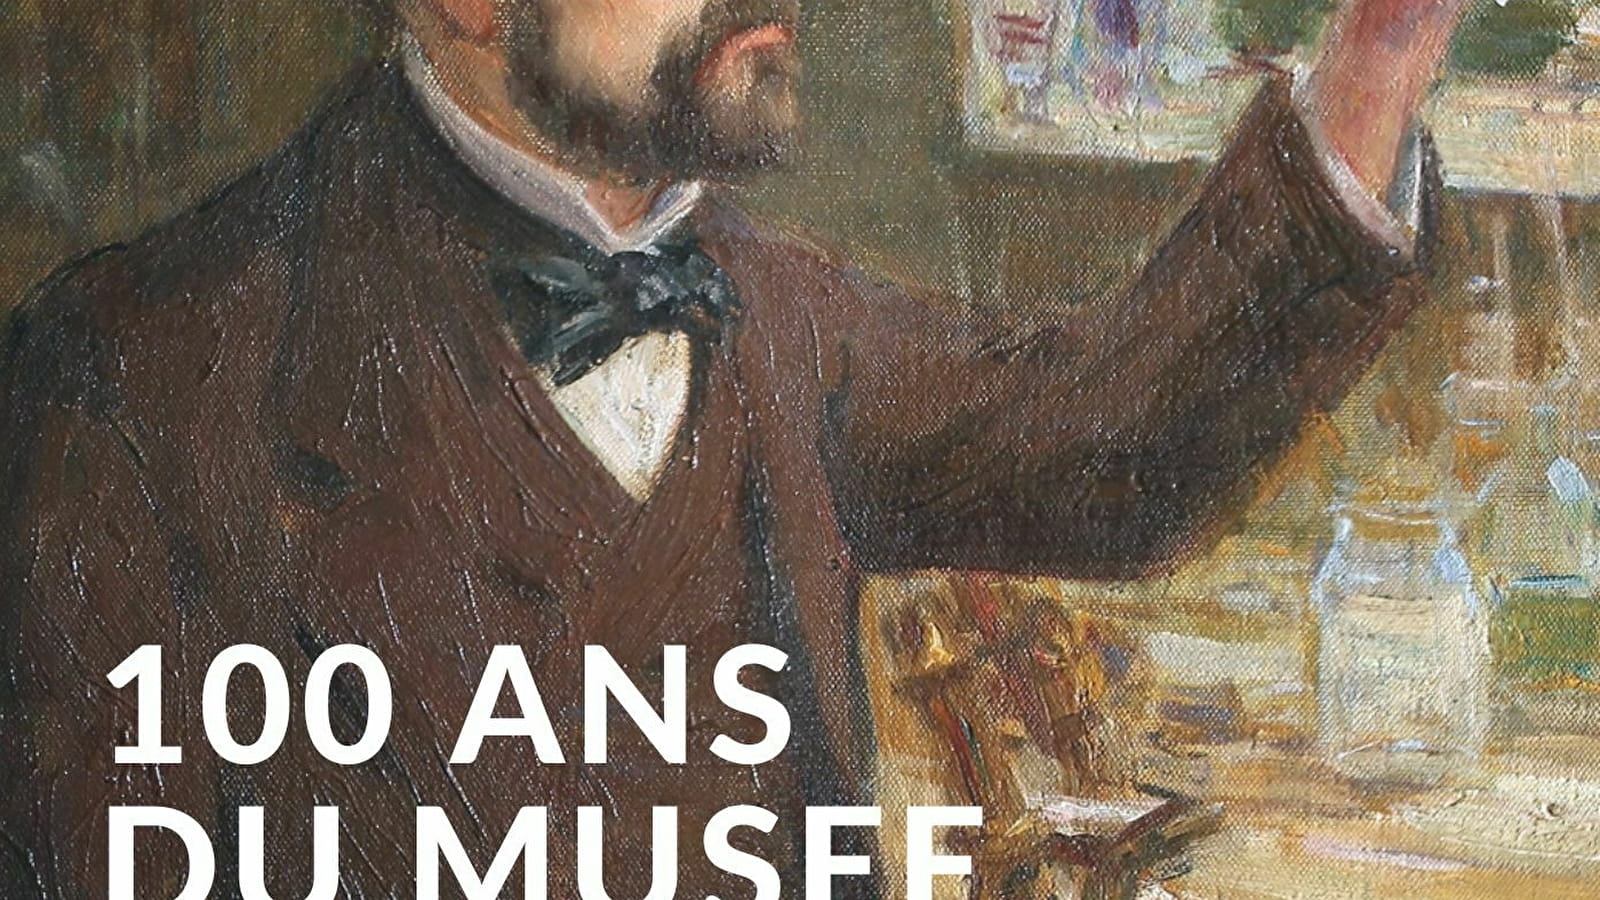 EXPOSITION - LE MUSÉE PASTEUR FÊTE SES 100 ANS